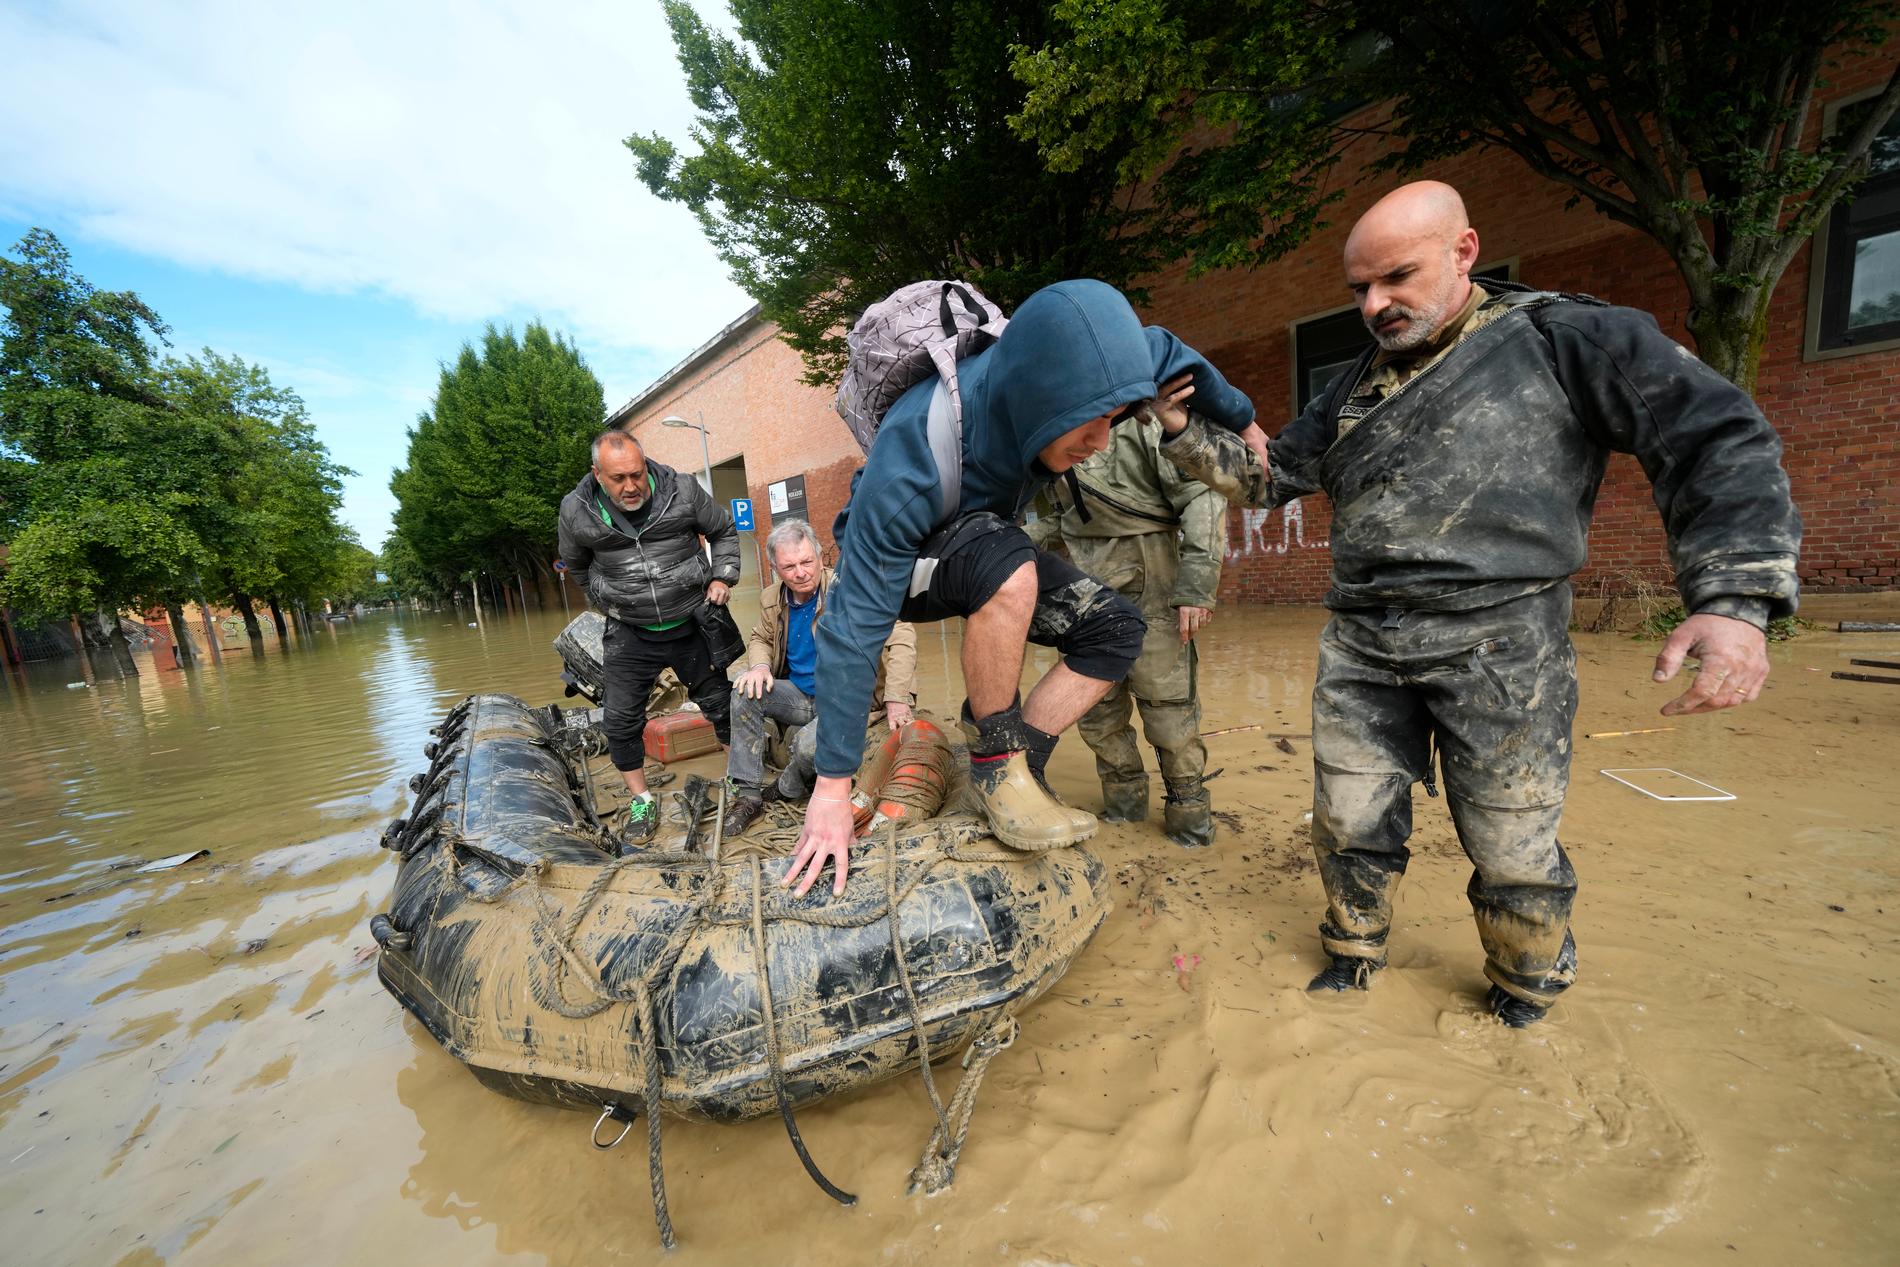 Räddningsinsats i staden Faenza under torsdagen.